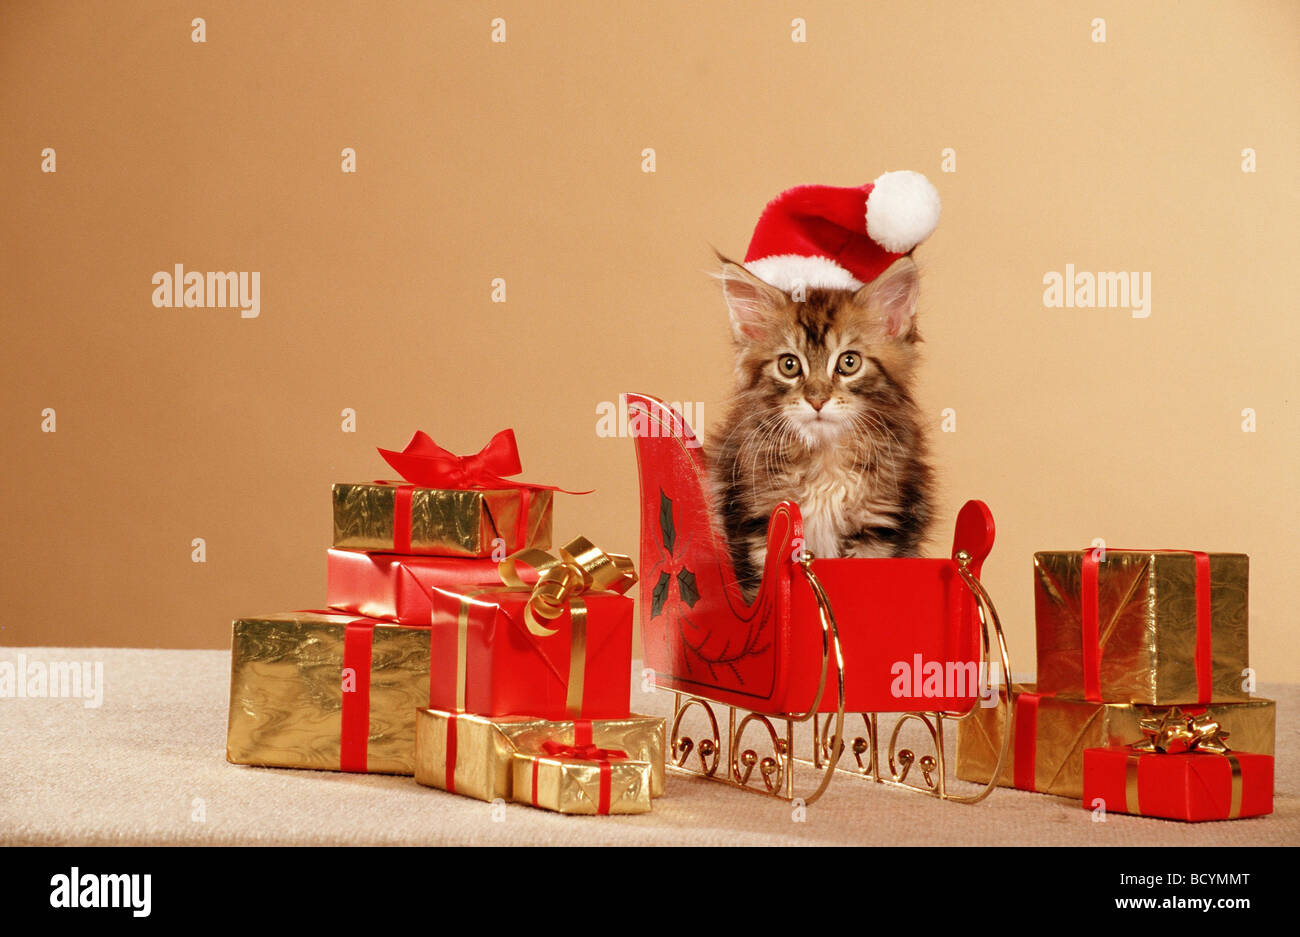 Cheveux longs américains, Maine Coon. Tabby chaton avec chapeau de Père Noël sur un traîneau entre les cadeaux enveloppés Banque D'Images